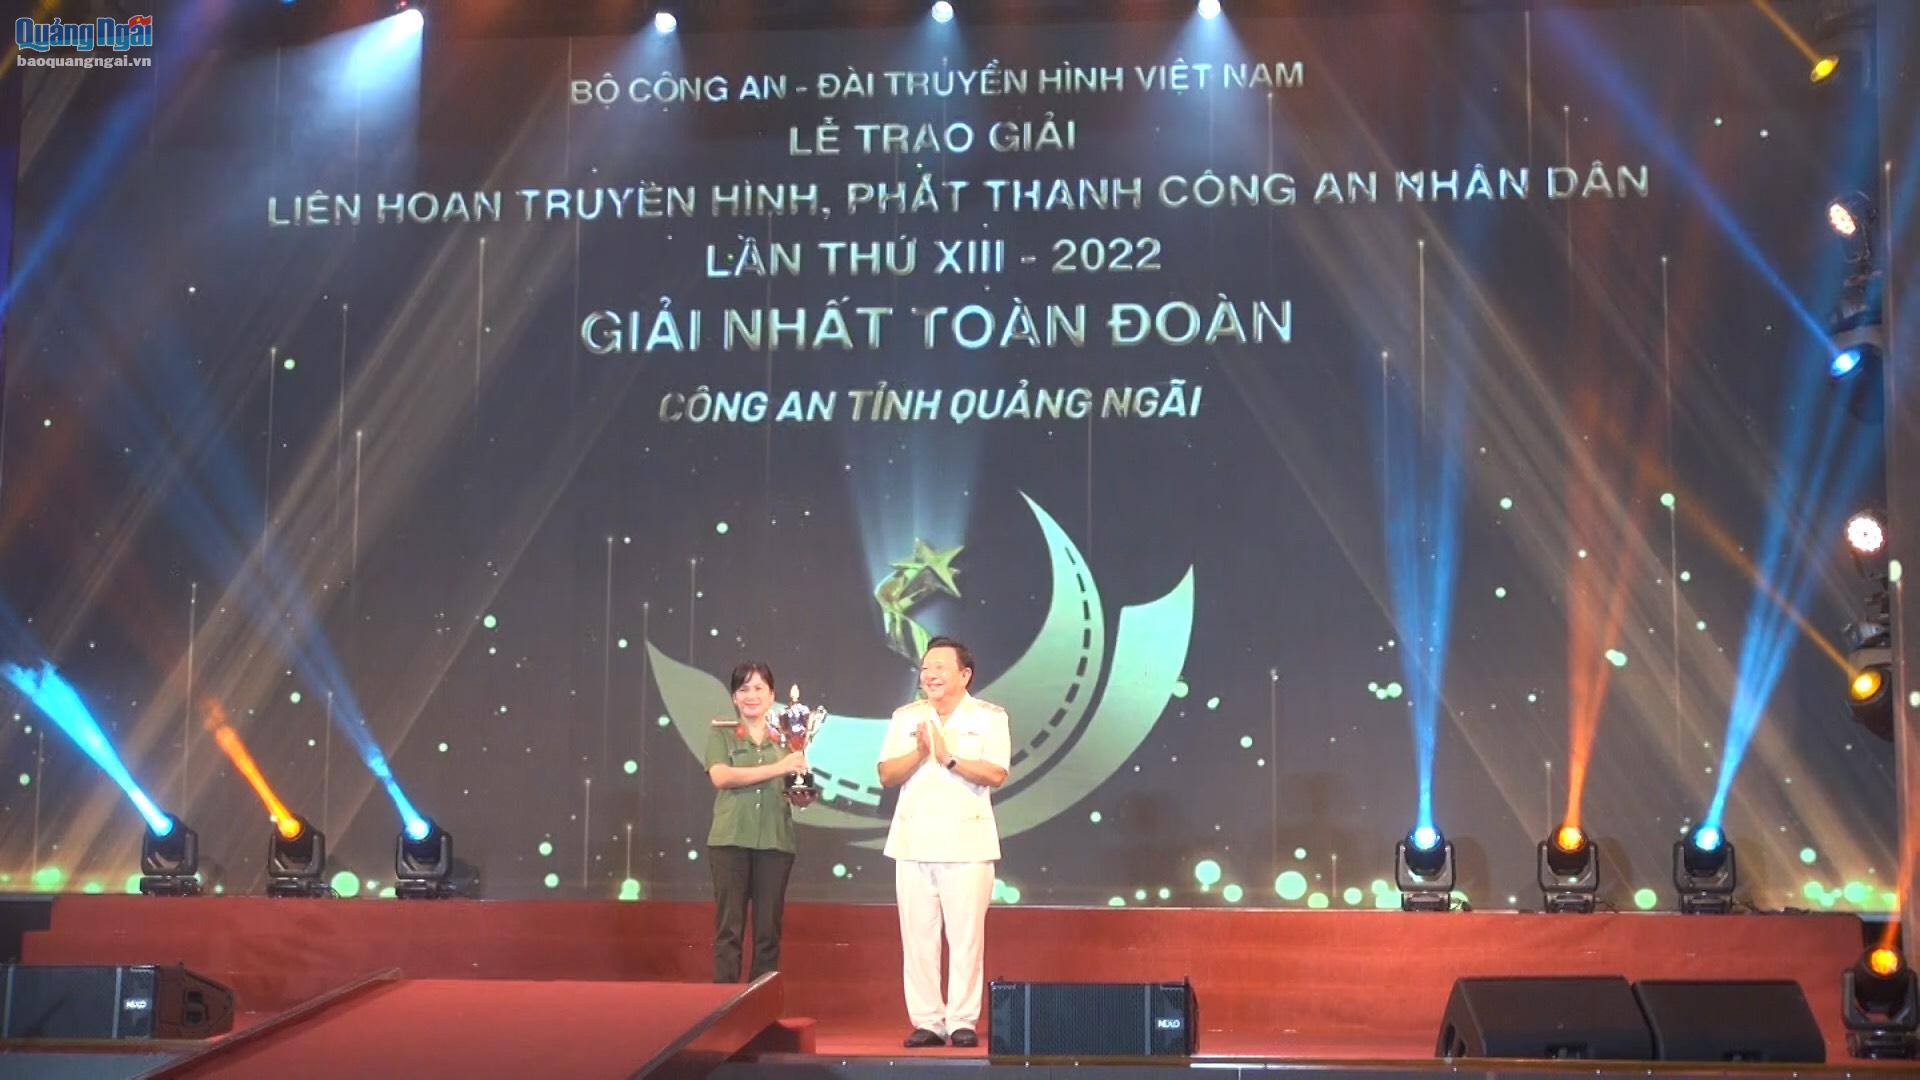 Công an tỉnh Quảng Ngãi đoạt giải Nhất toàn đoàn Liên hoan Truyền hình - Phát thanh CAND